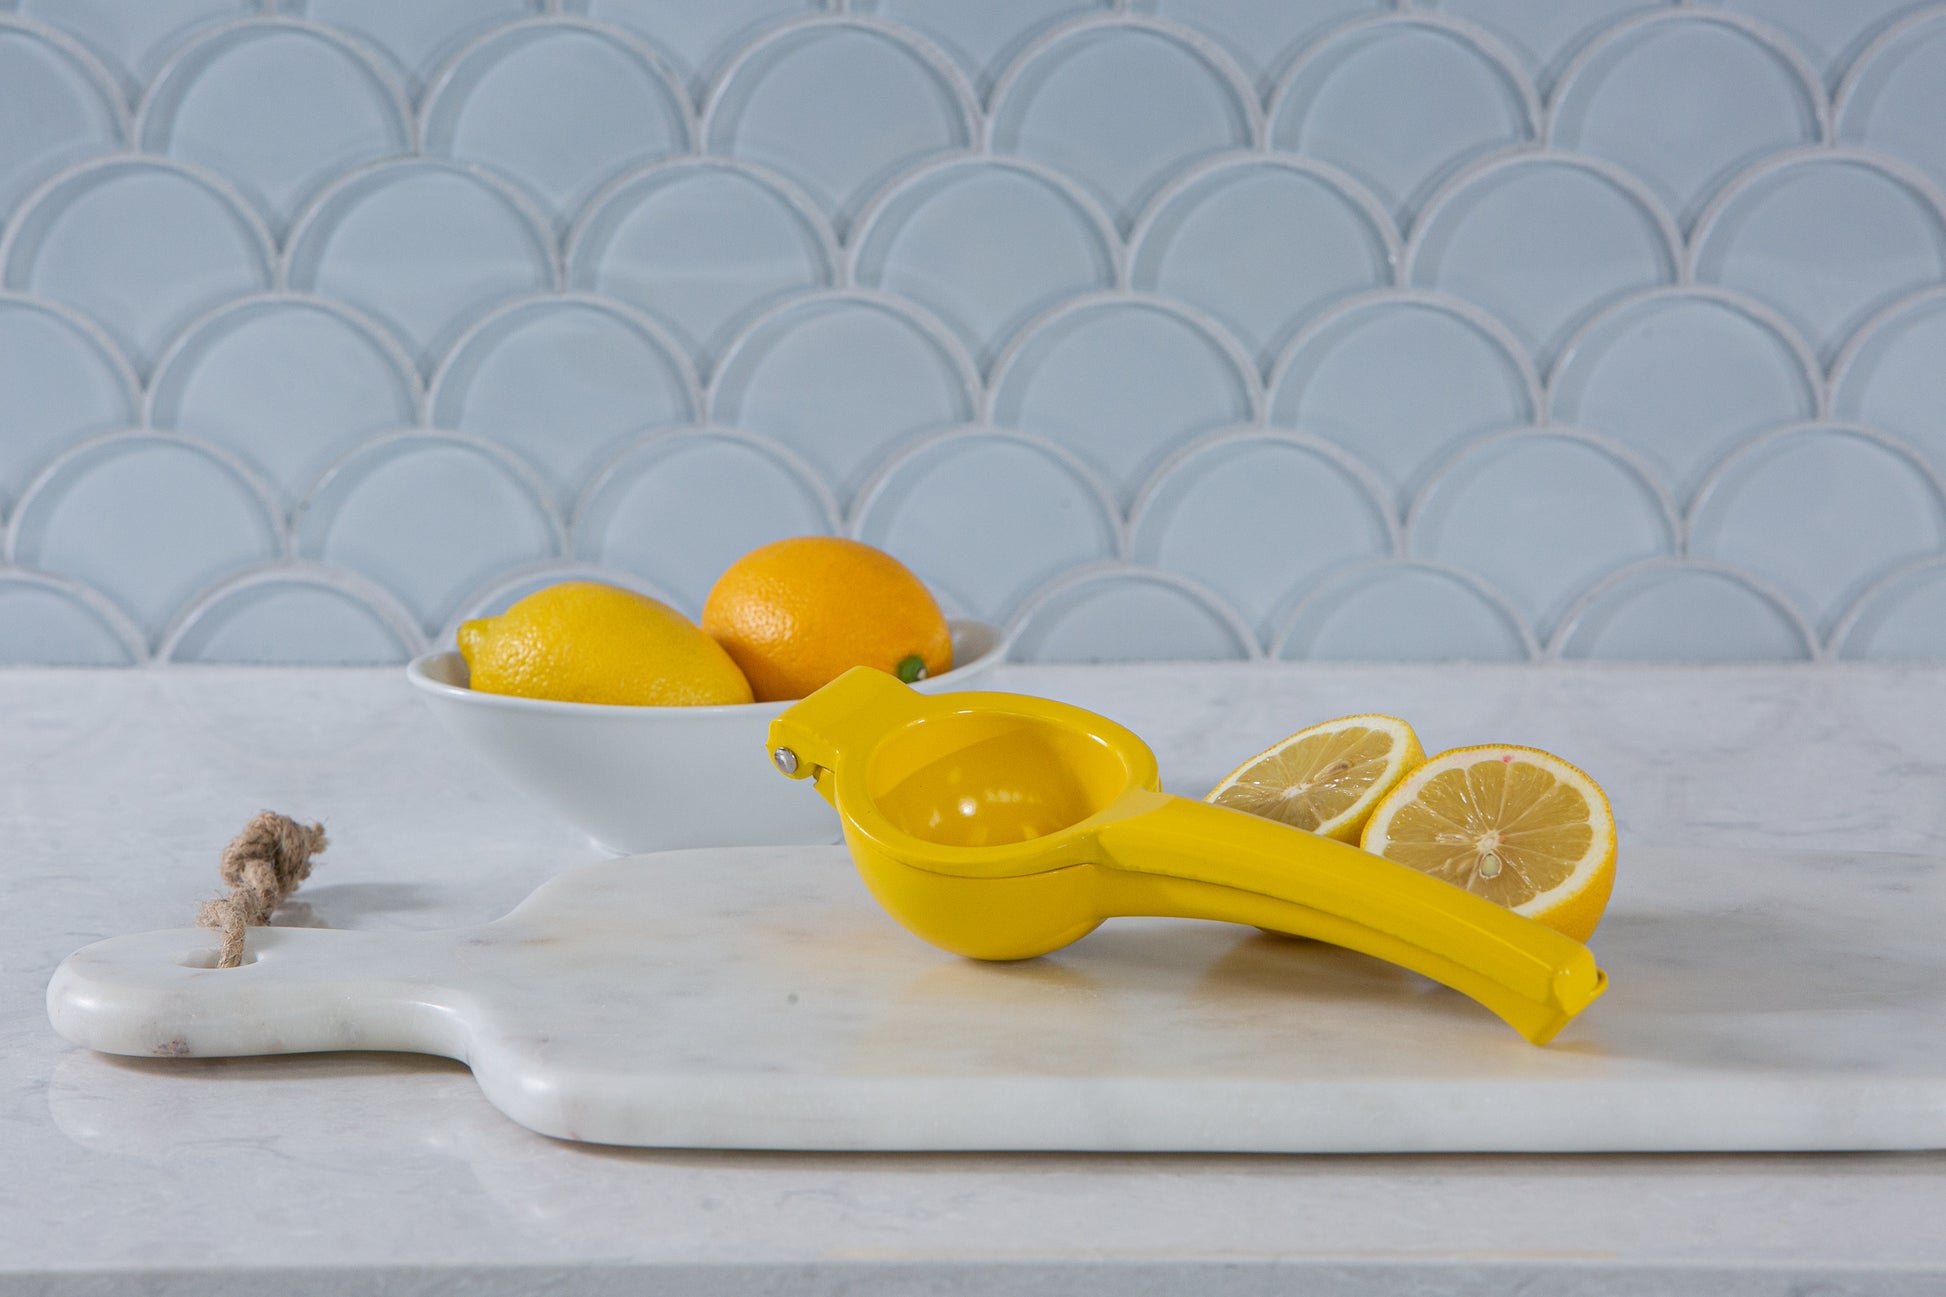 Lemon Squeezer Kitchen Tools & Utensils Harold Import